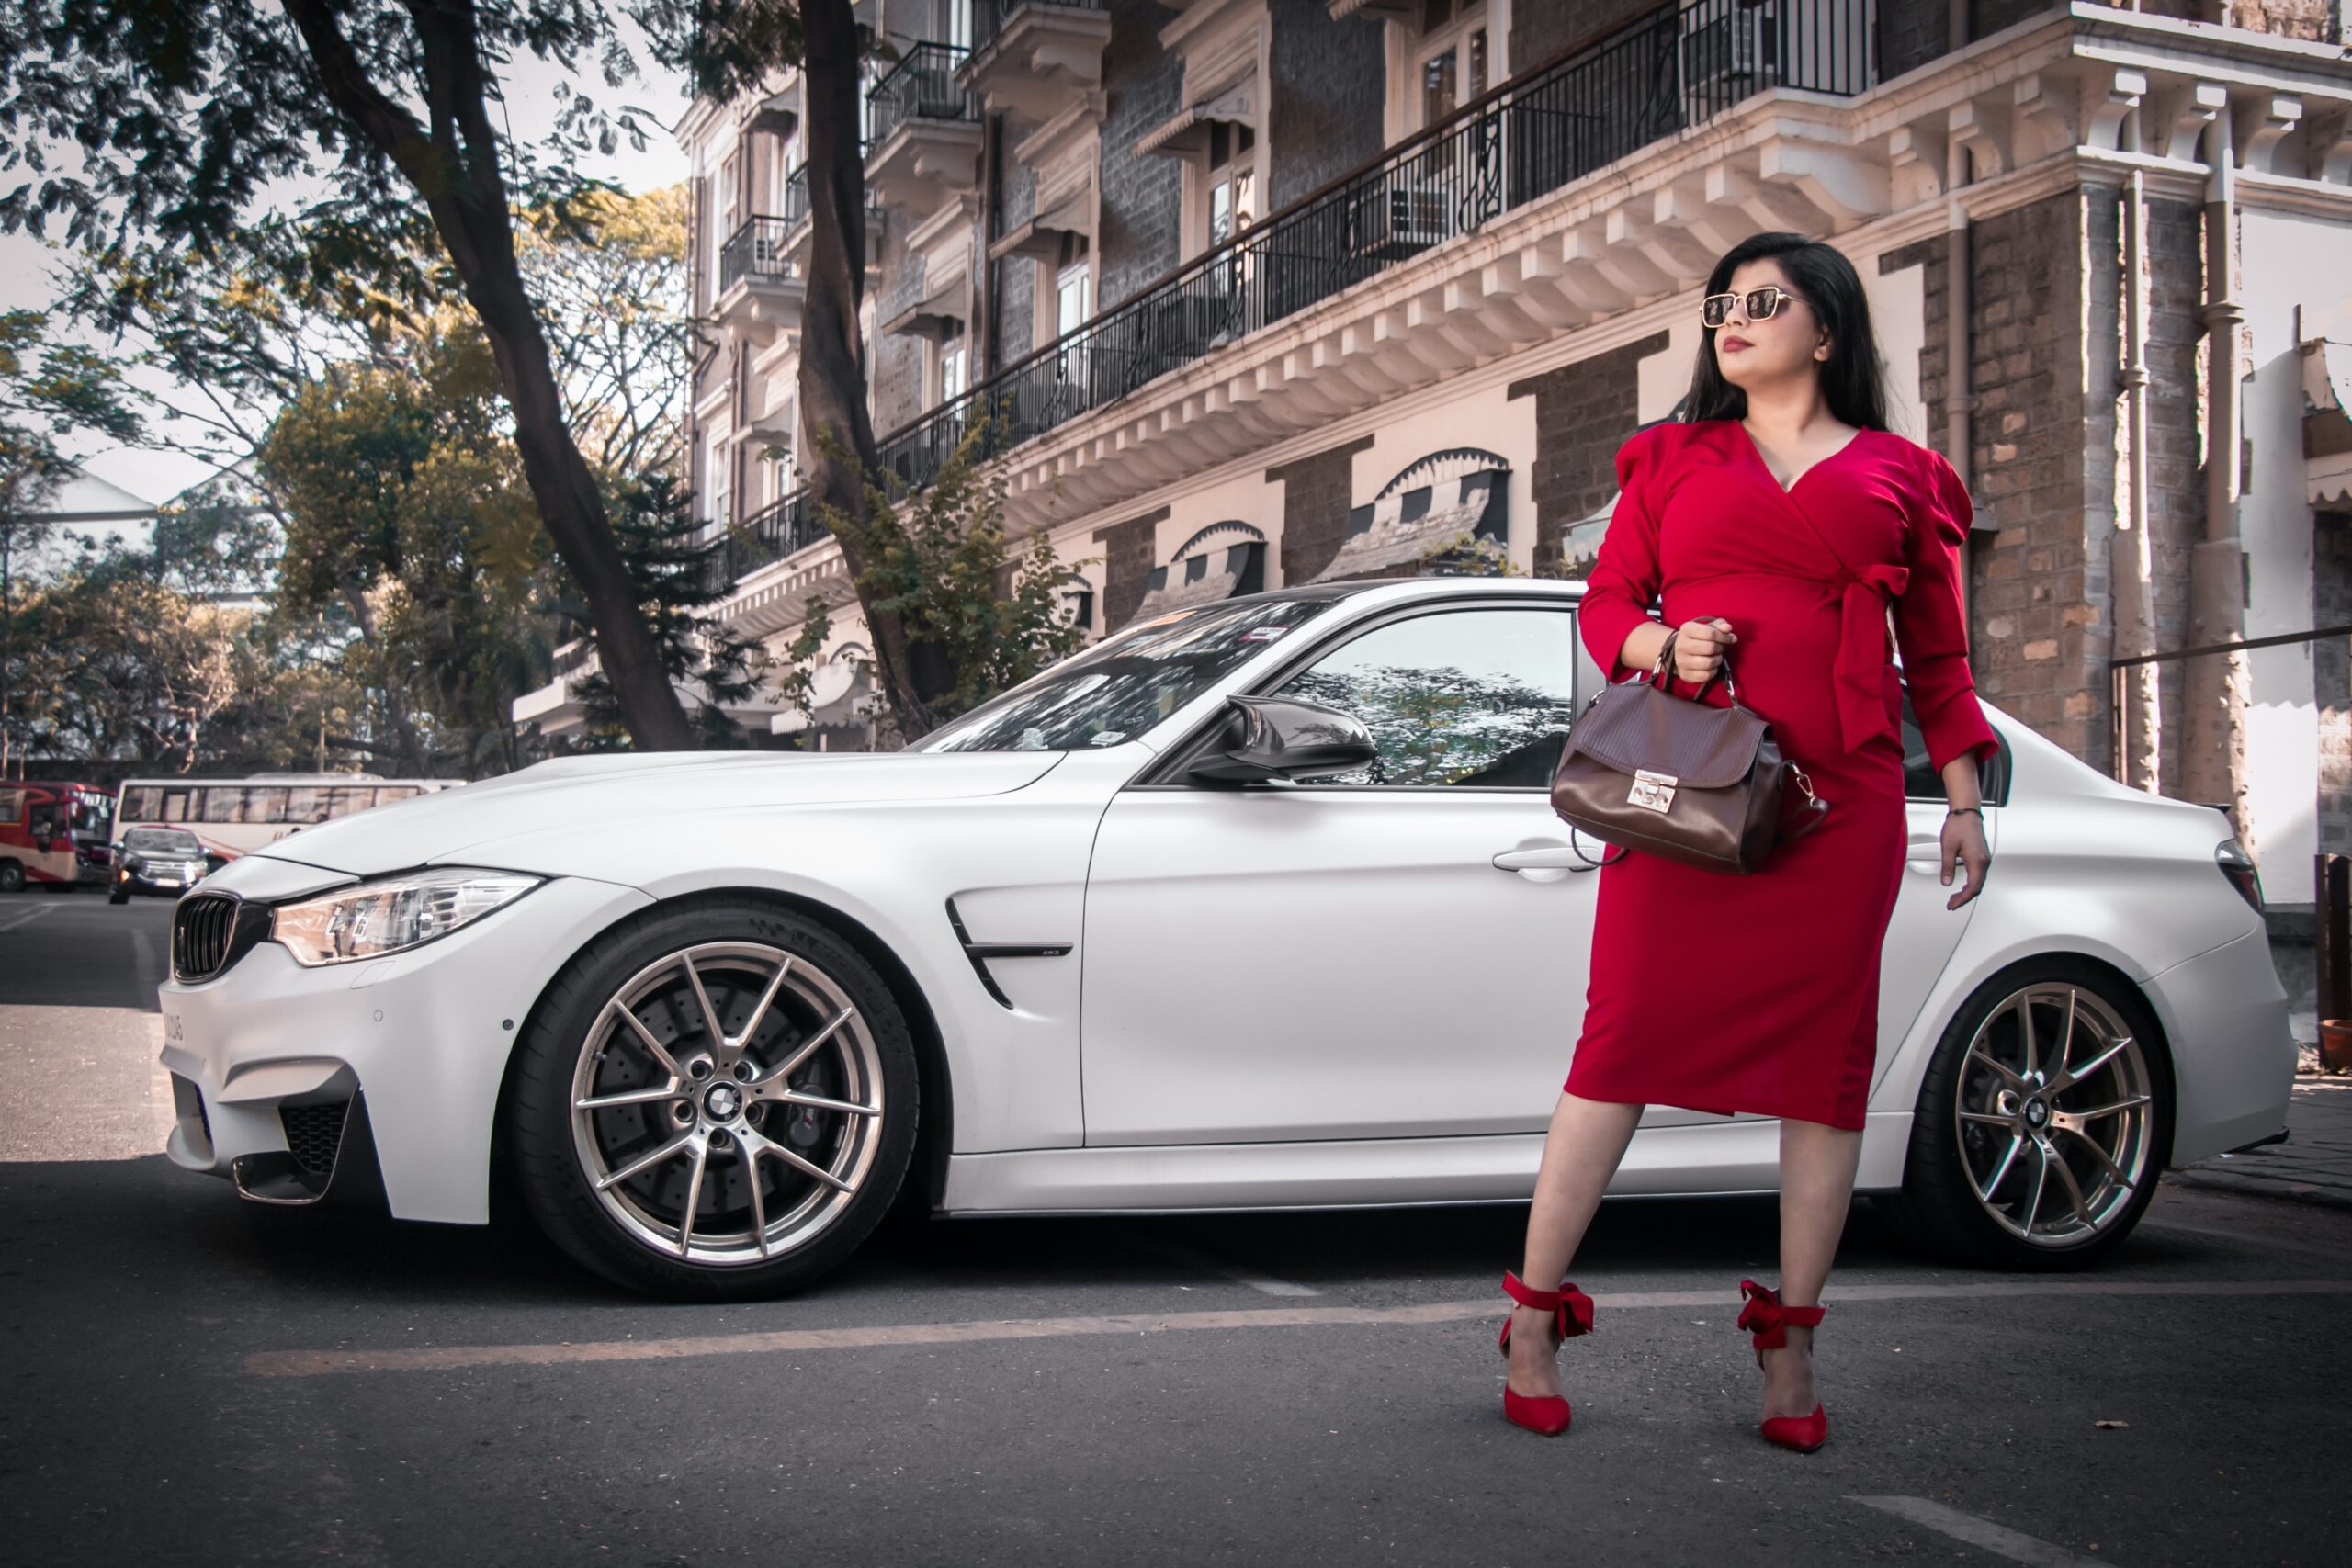 BMW Deluxe Handbag For Women - BMW Women's Handbag